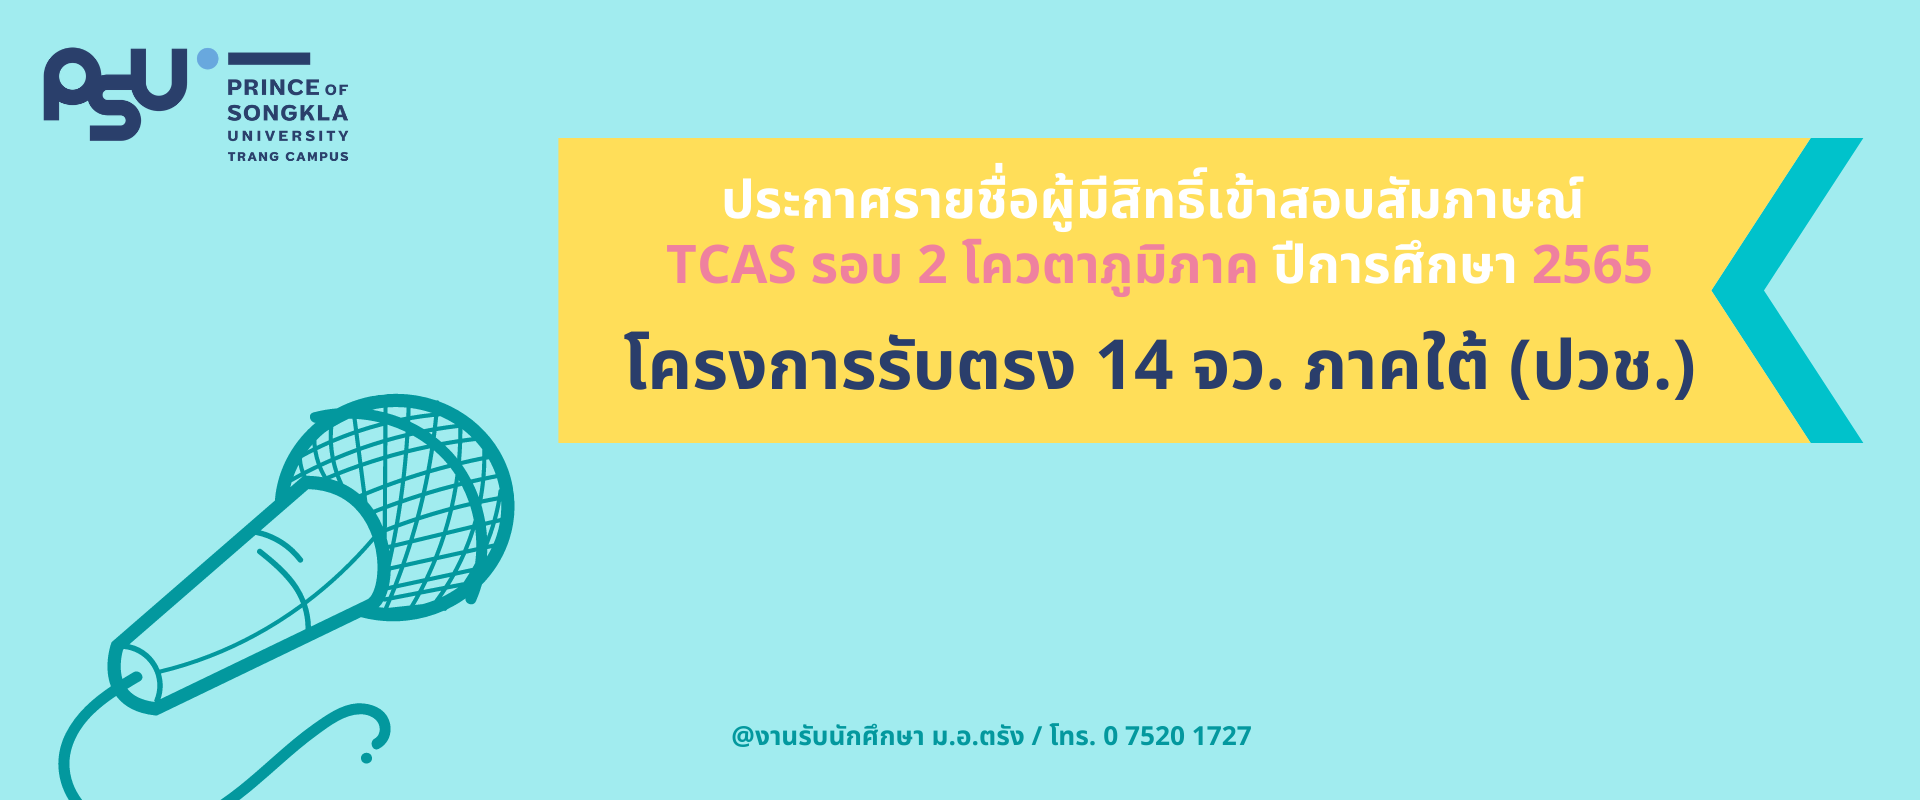 You are currently viewing รายชื่อผู้มีสิทธิ์เข้าสอบสัมภาษณ์ TCAS รอบ 2 โครงการรับตรง 14 จว. (ปวช) ปีการศึกษา 2565